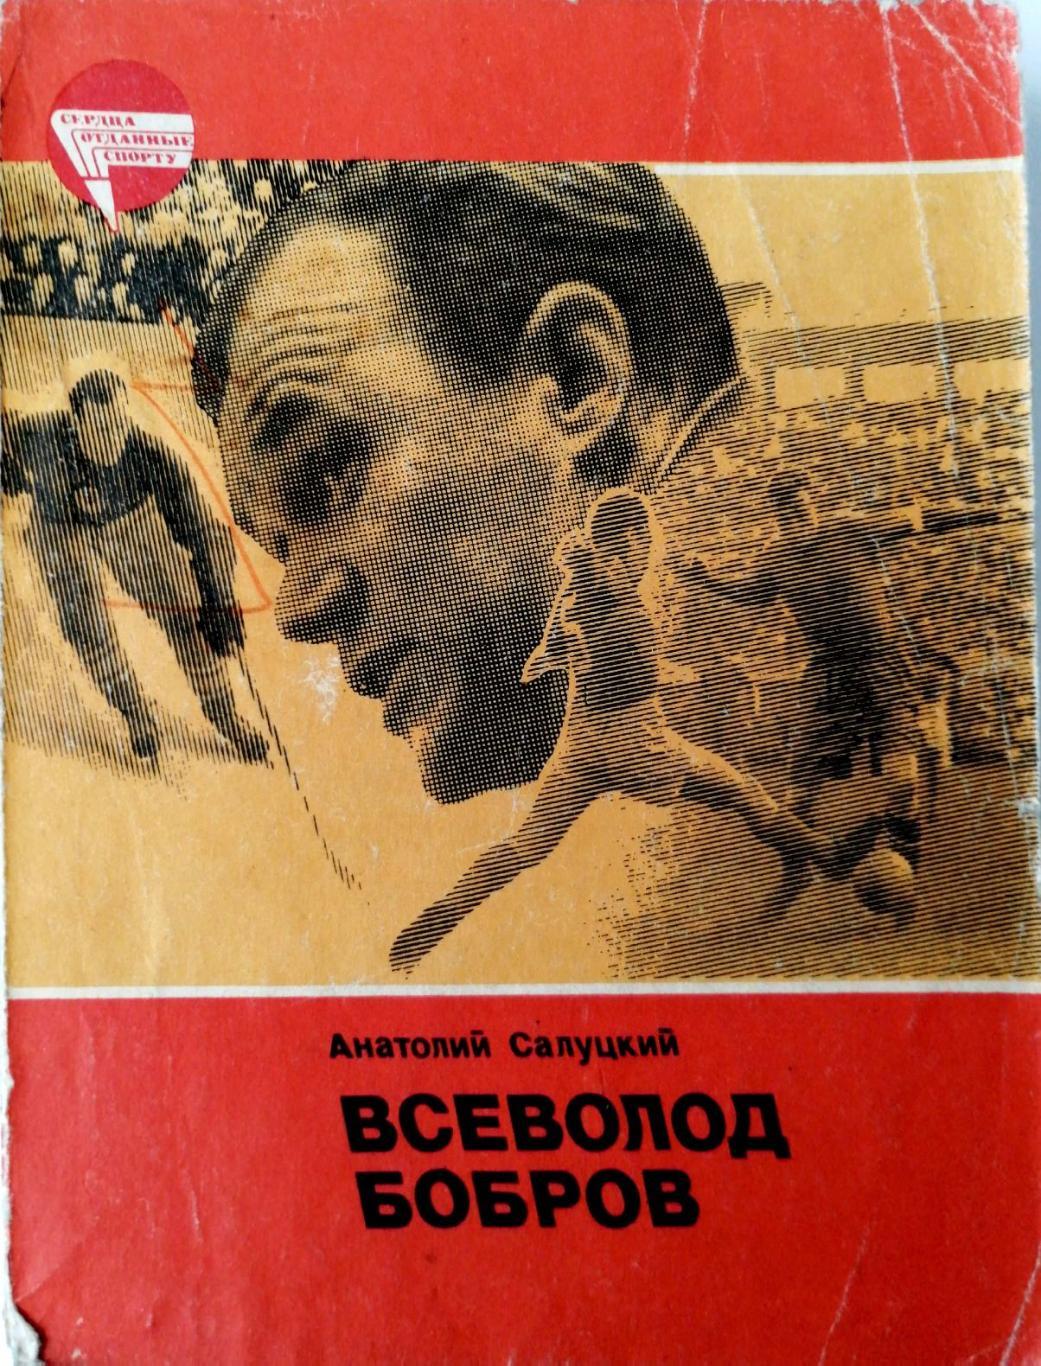 А.Салуцкий. Всеволод Бобров (Москва, ФиС, 1984)